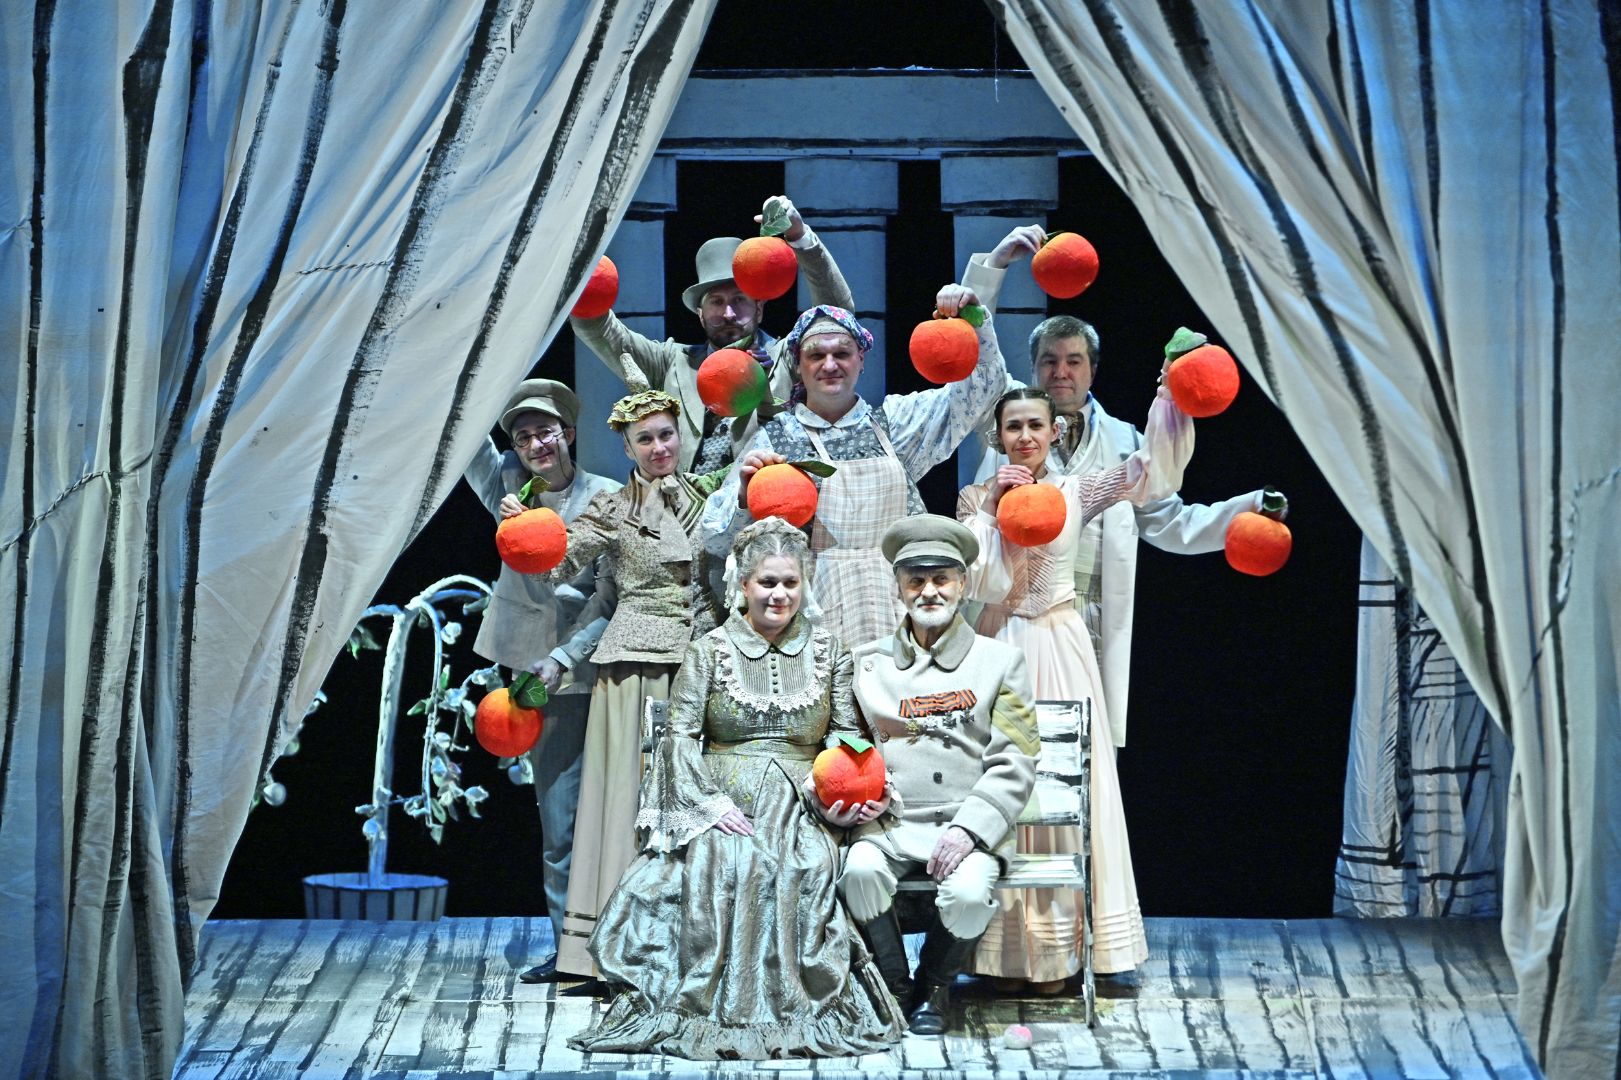 Спектакли «Наливные яблоки» и «Диалог одиноких душ» - гастроли Донецкого театра в «Югра-Классик».